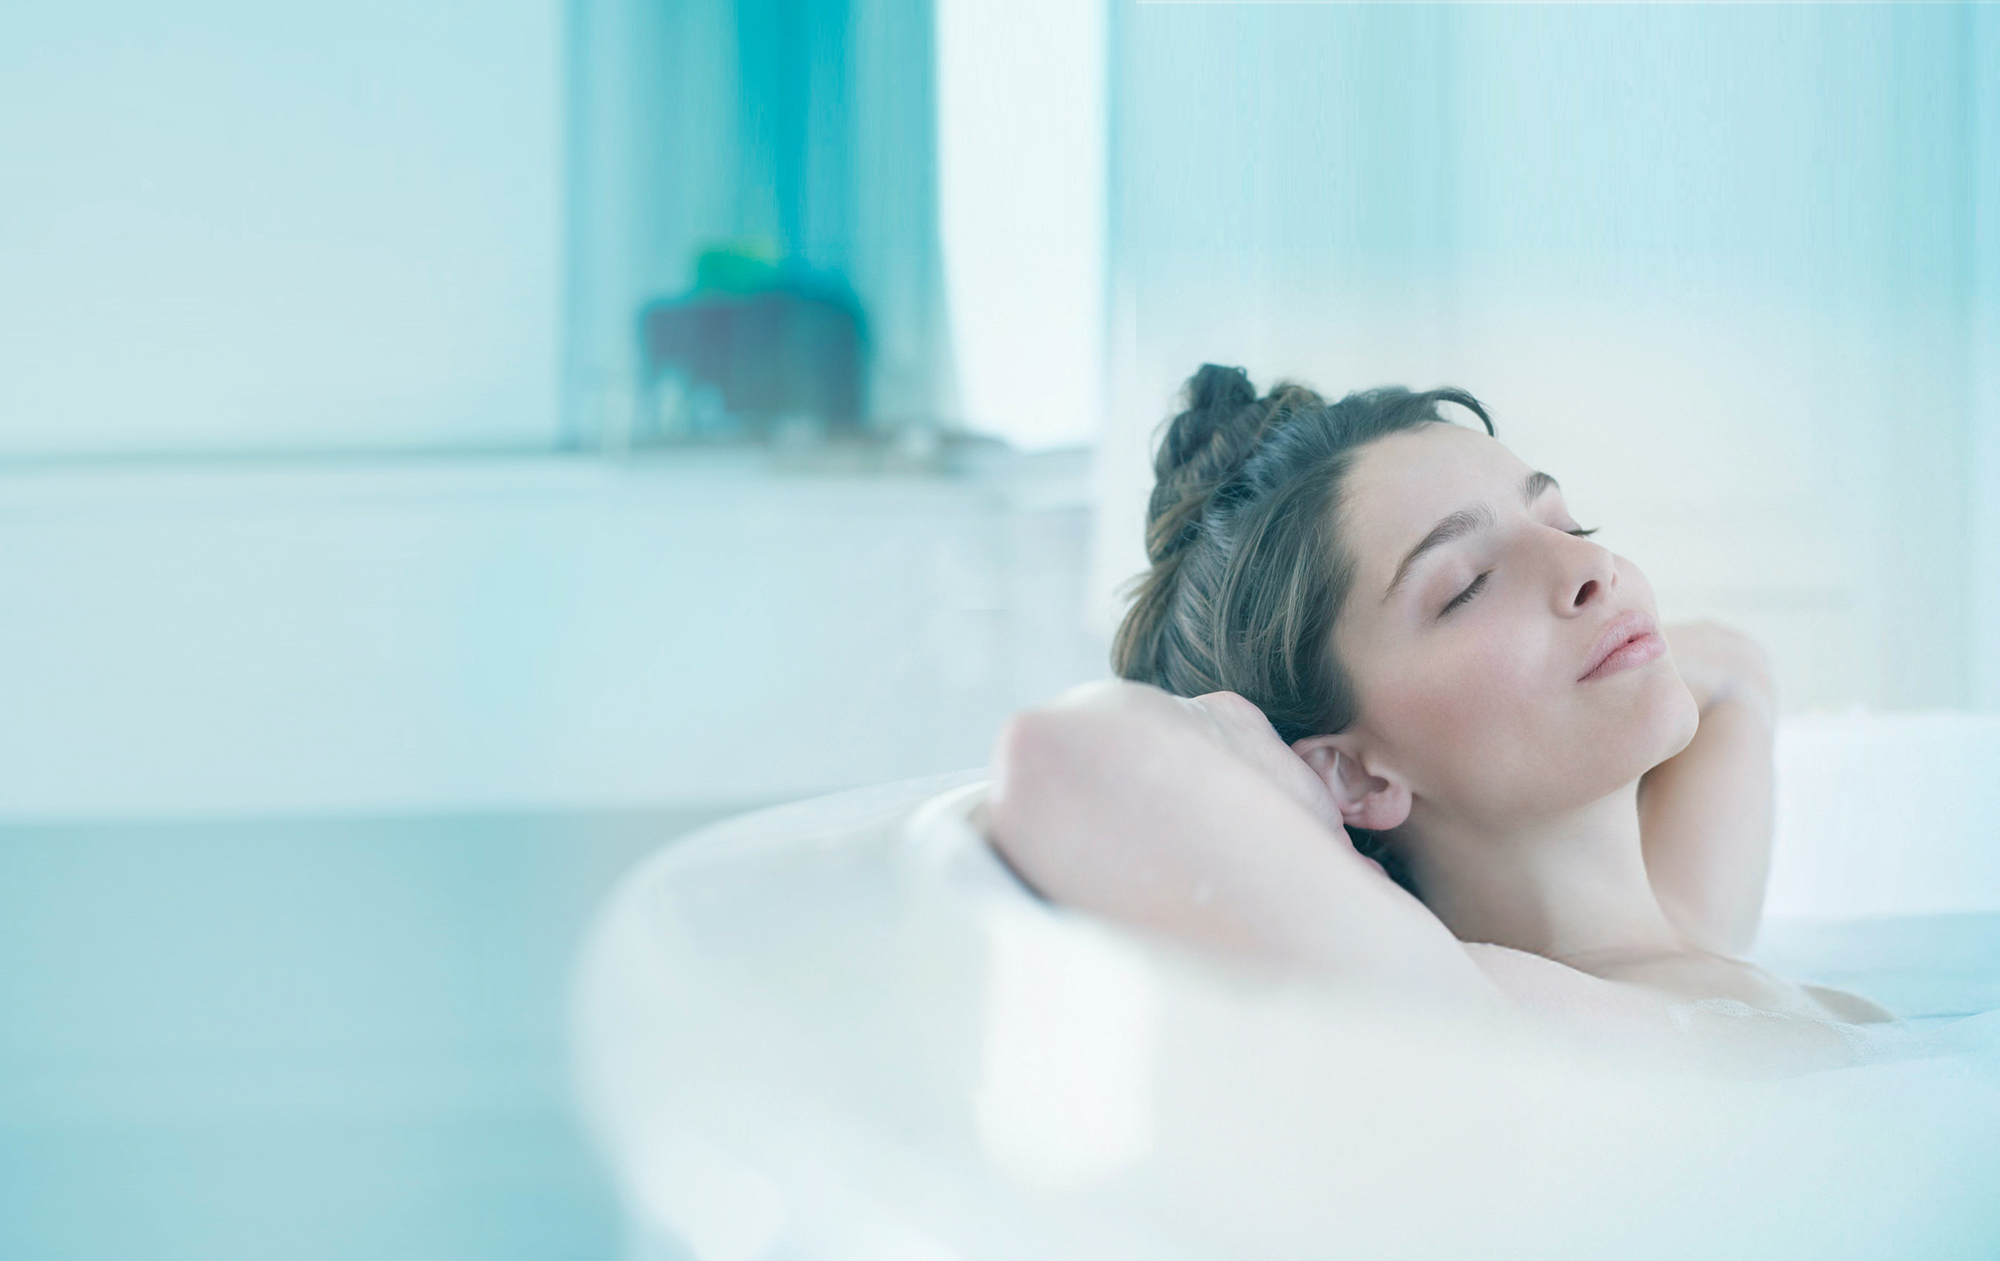 A woman enjoys a relaxing full bath in a bathtub